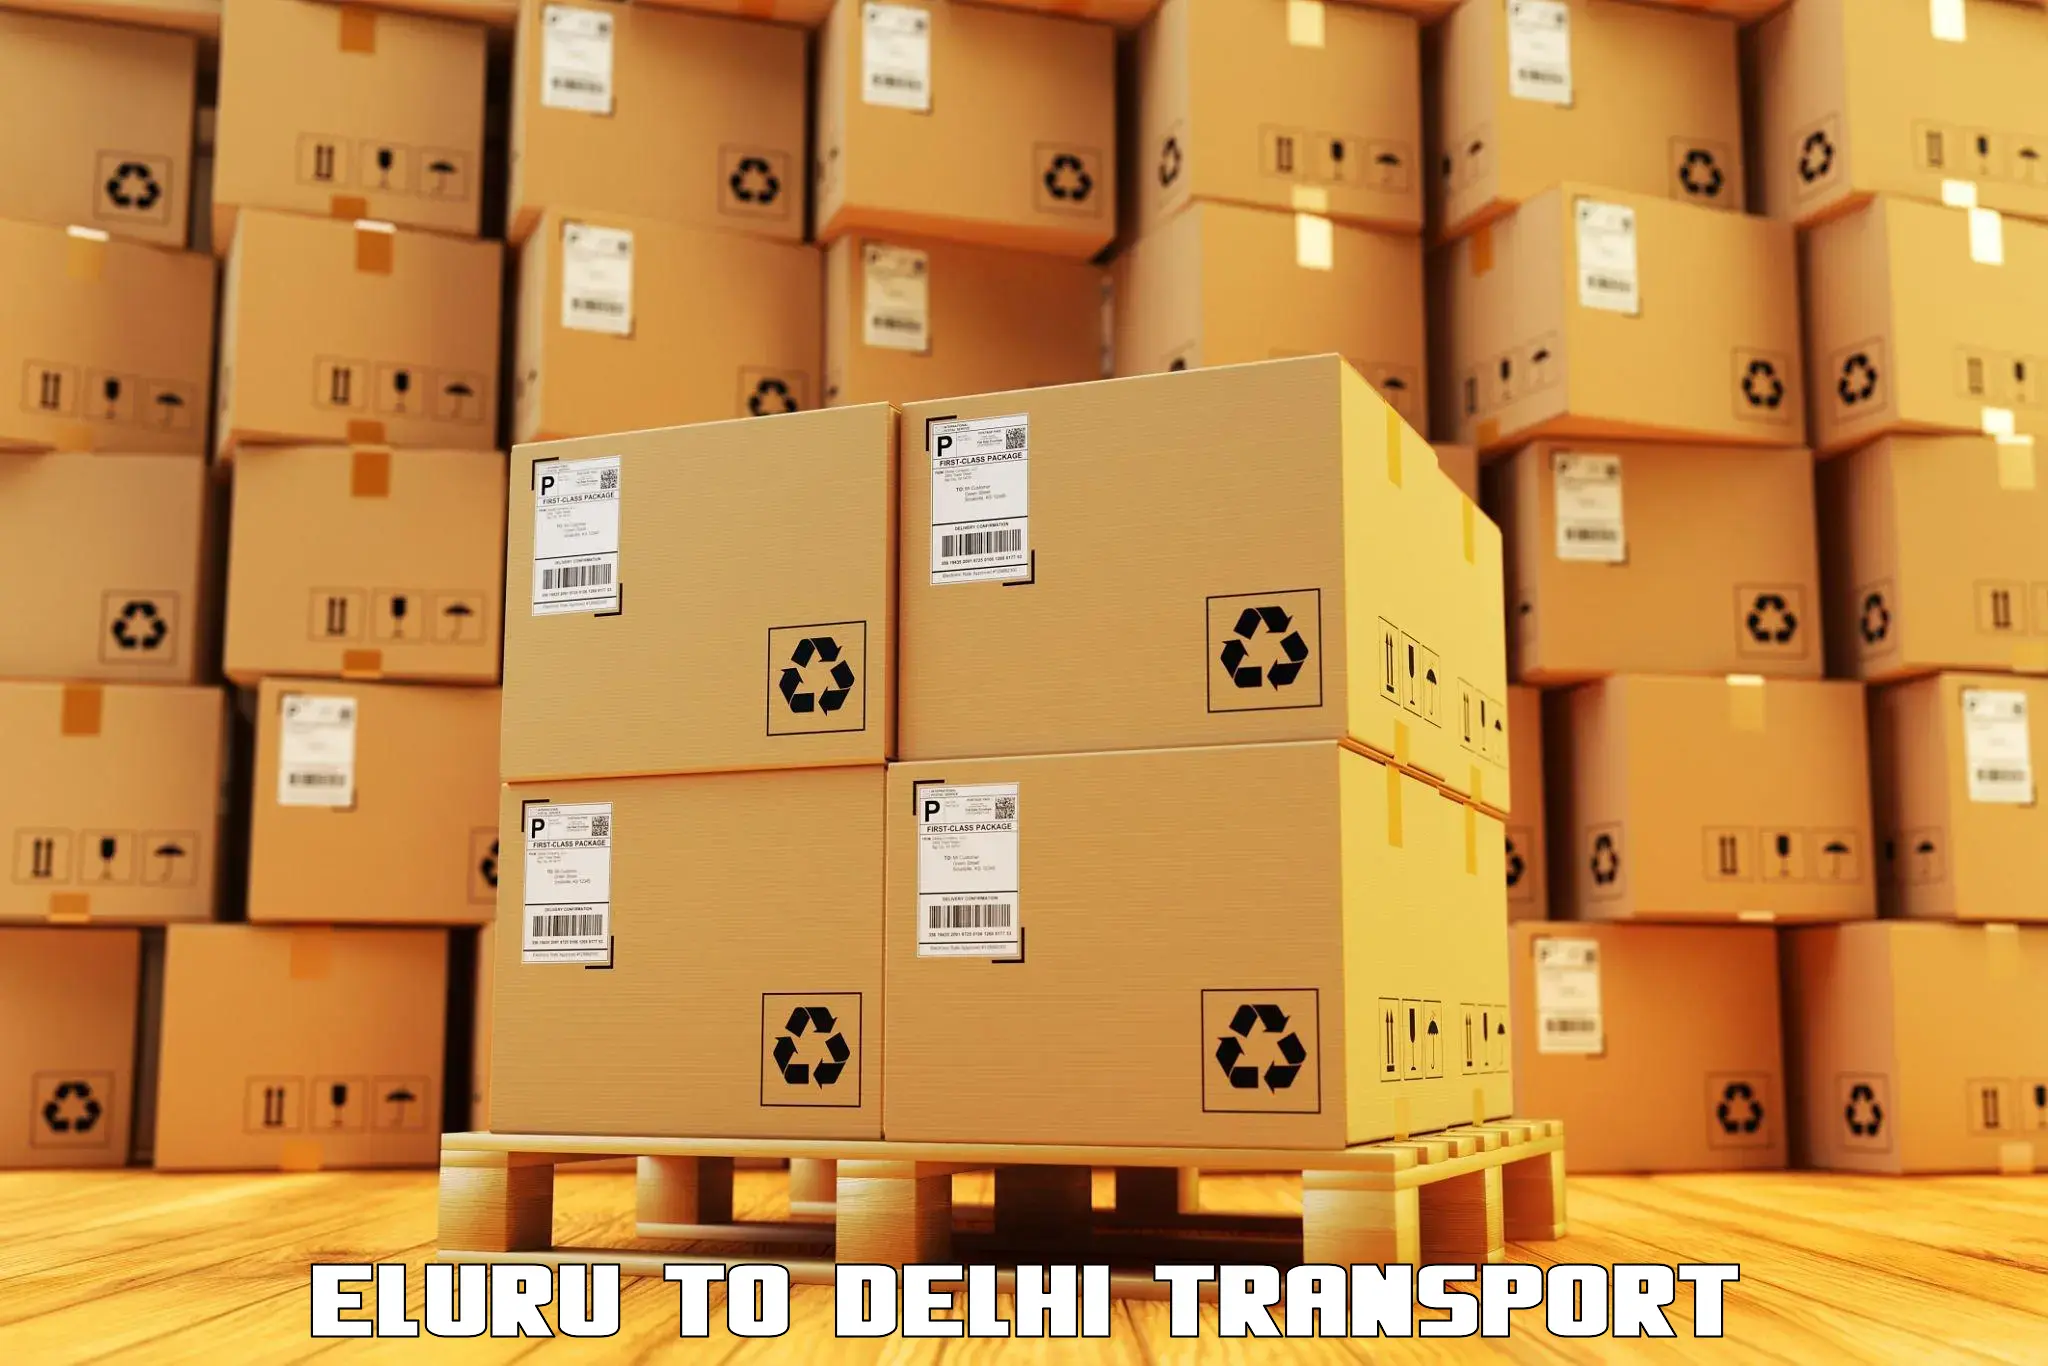 Online transport service Eluru to Delhi